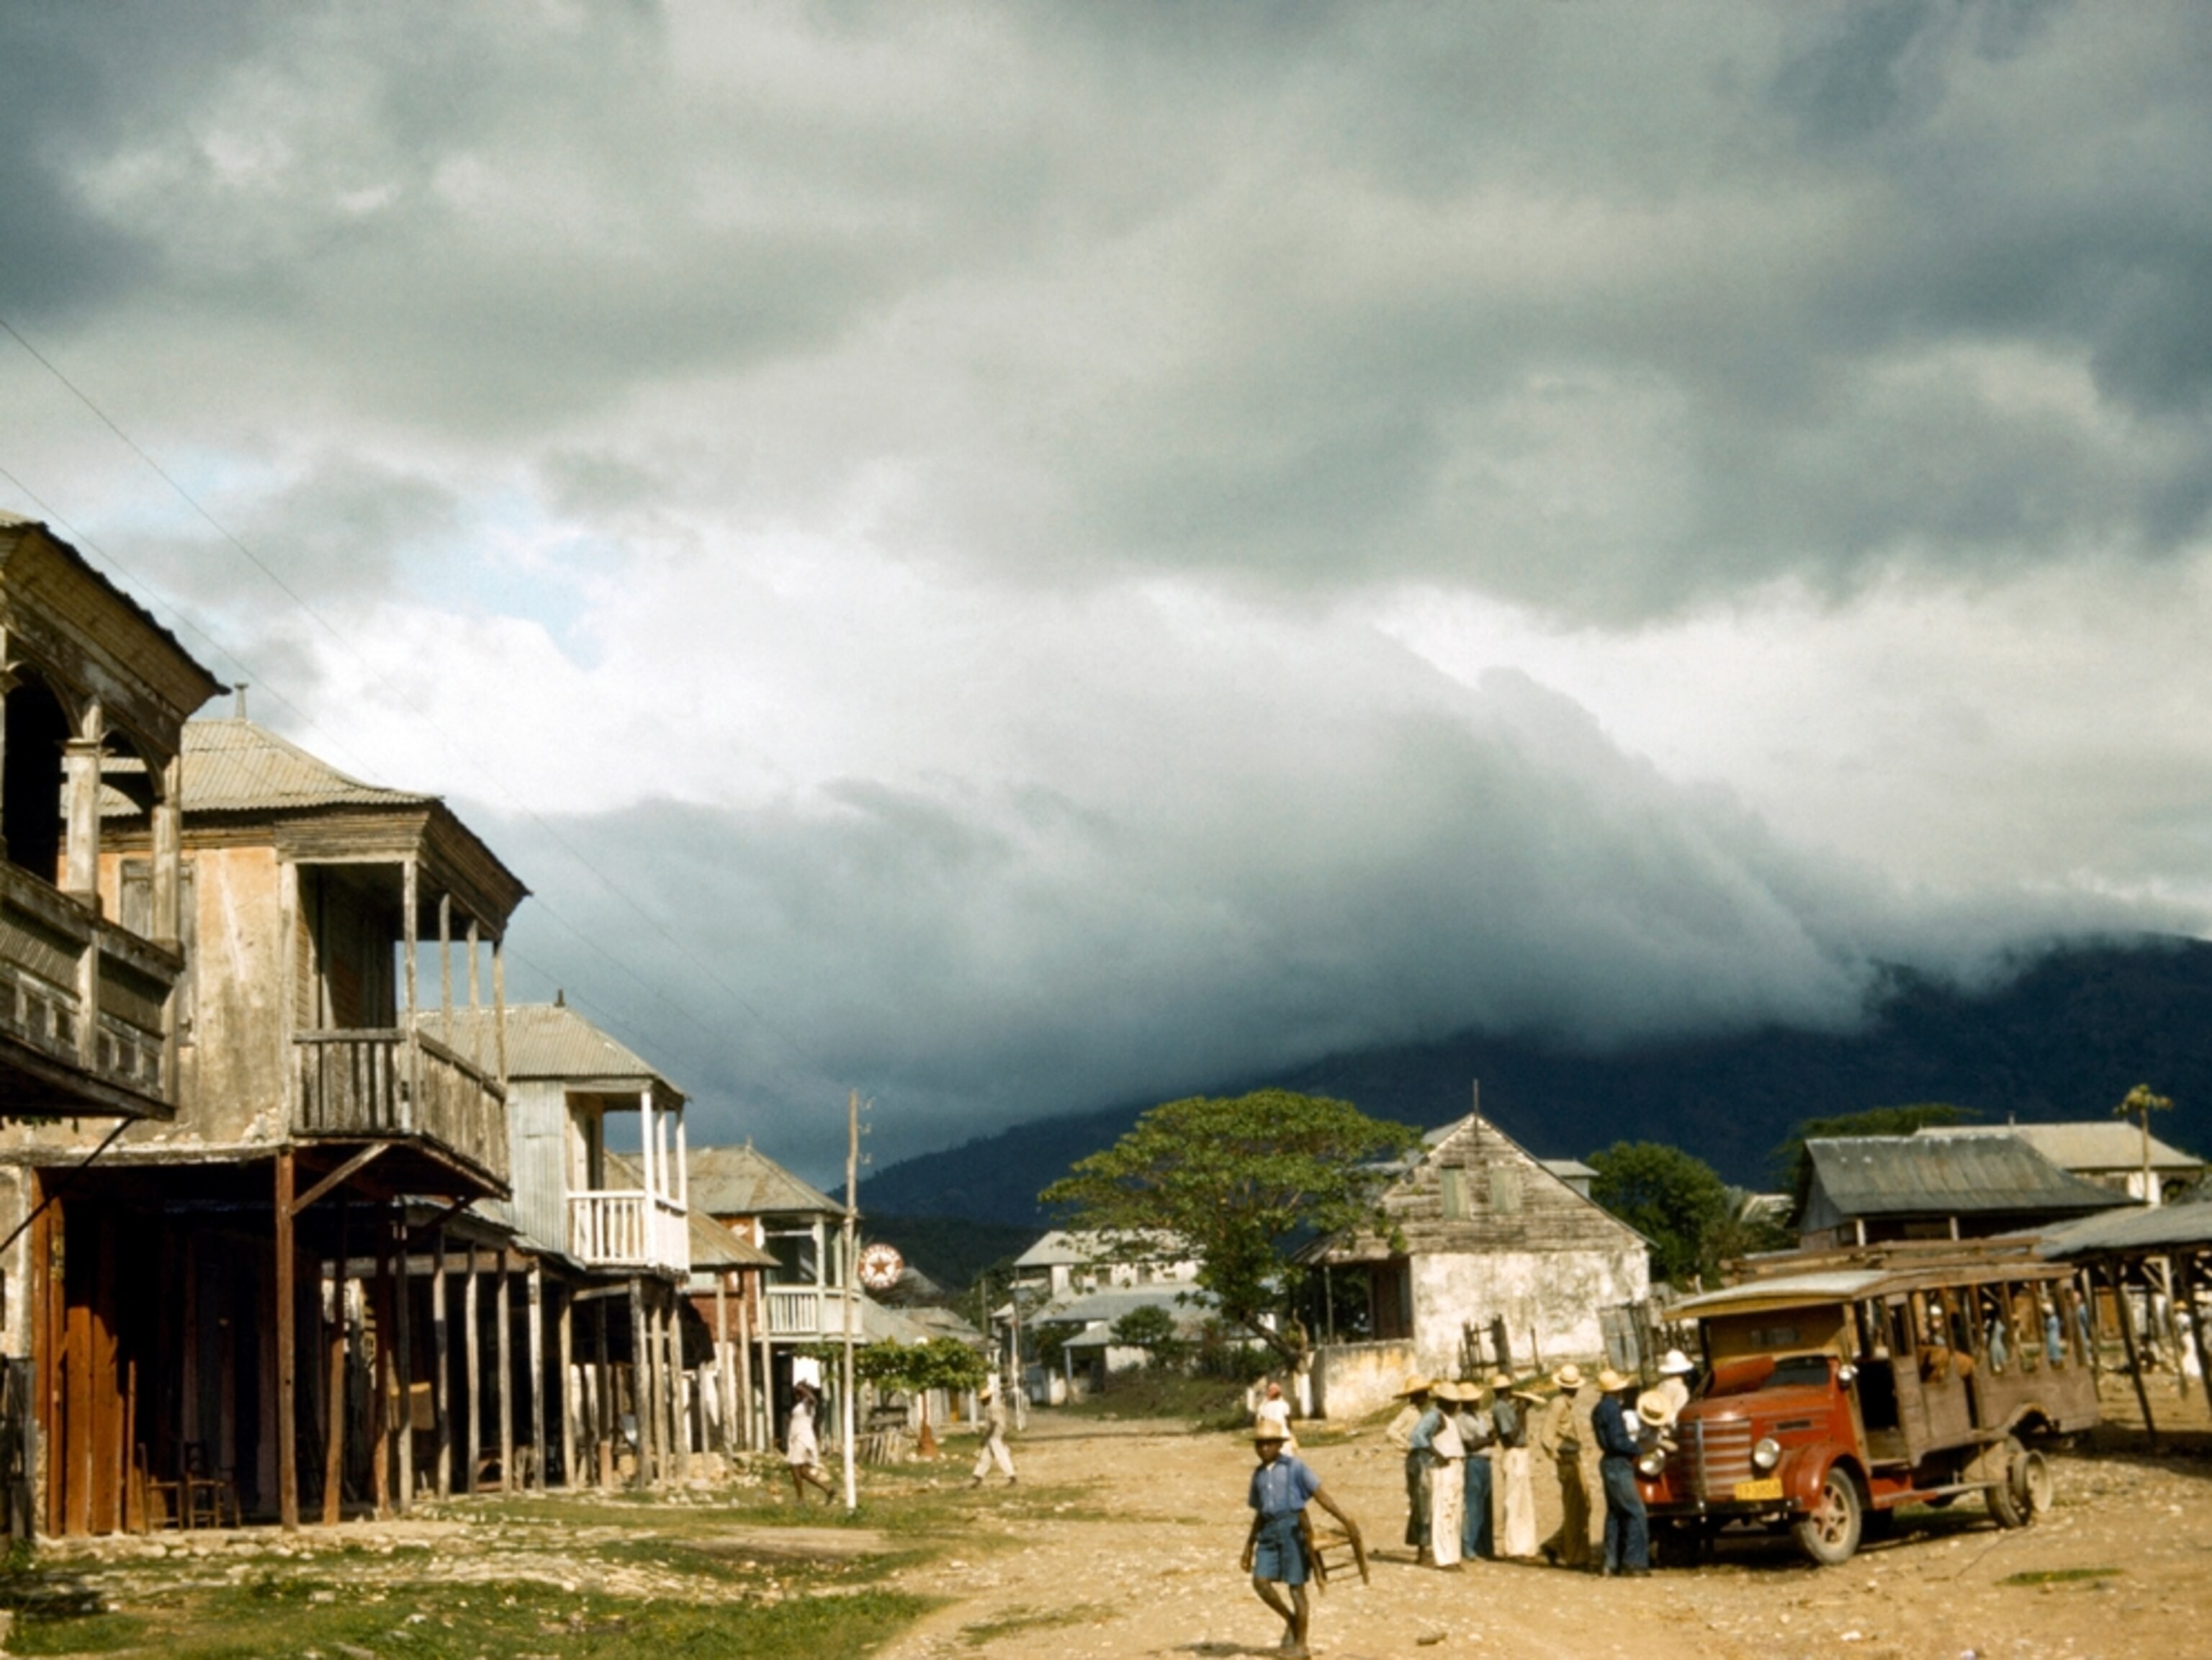 Буря надвигается. Деревенский рынок, Гаити. Фотограф Б. Энтони Стюарт